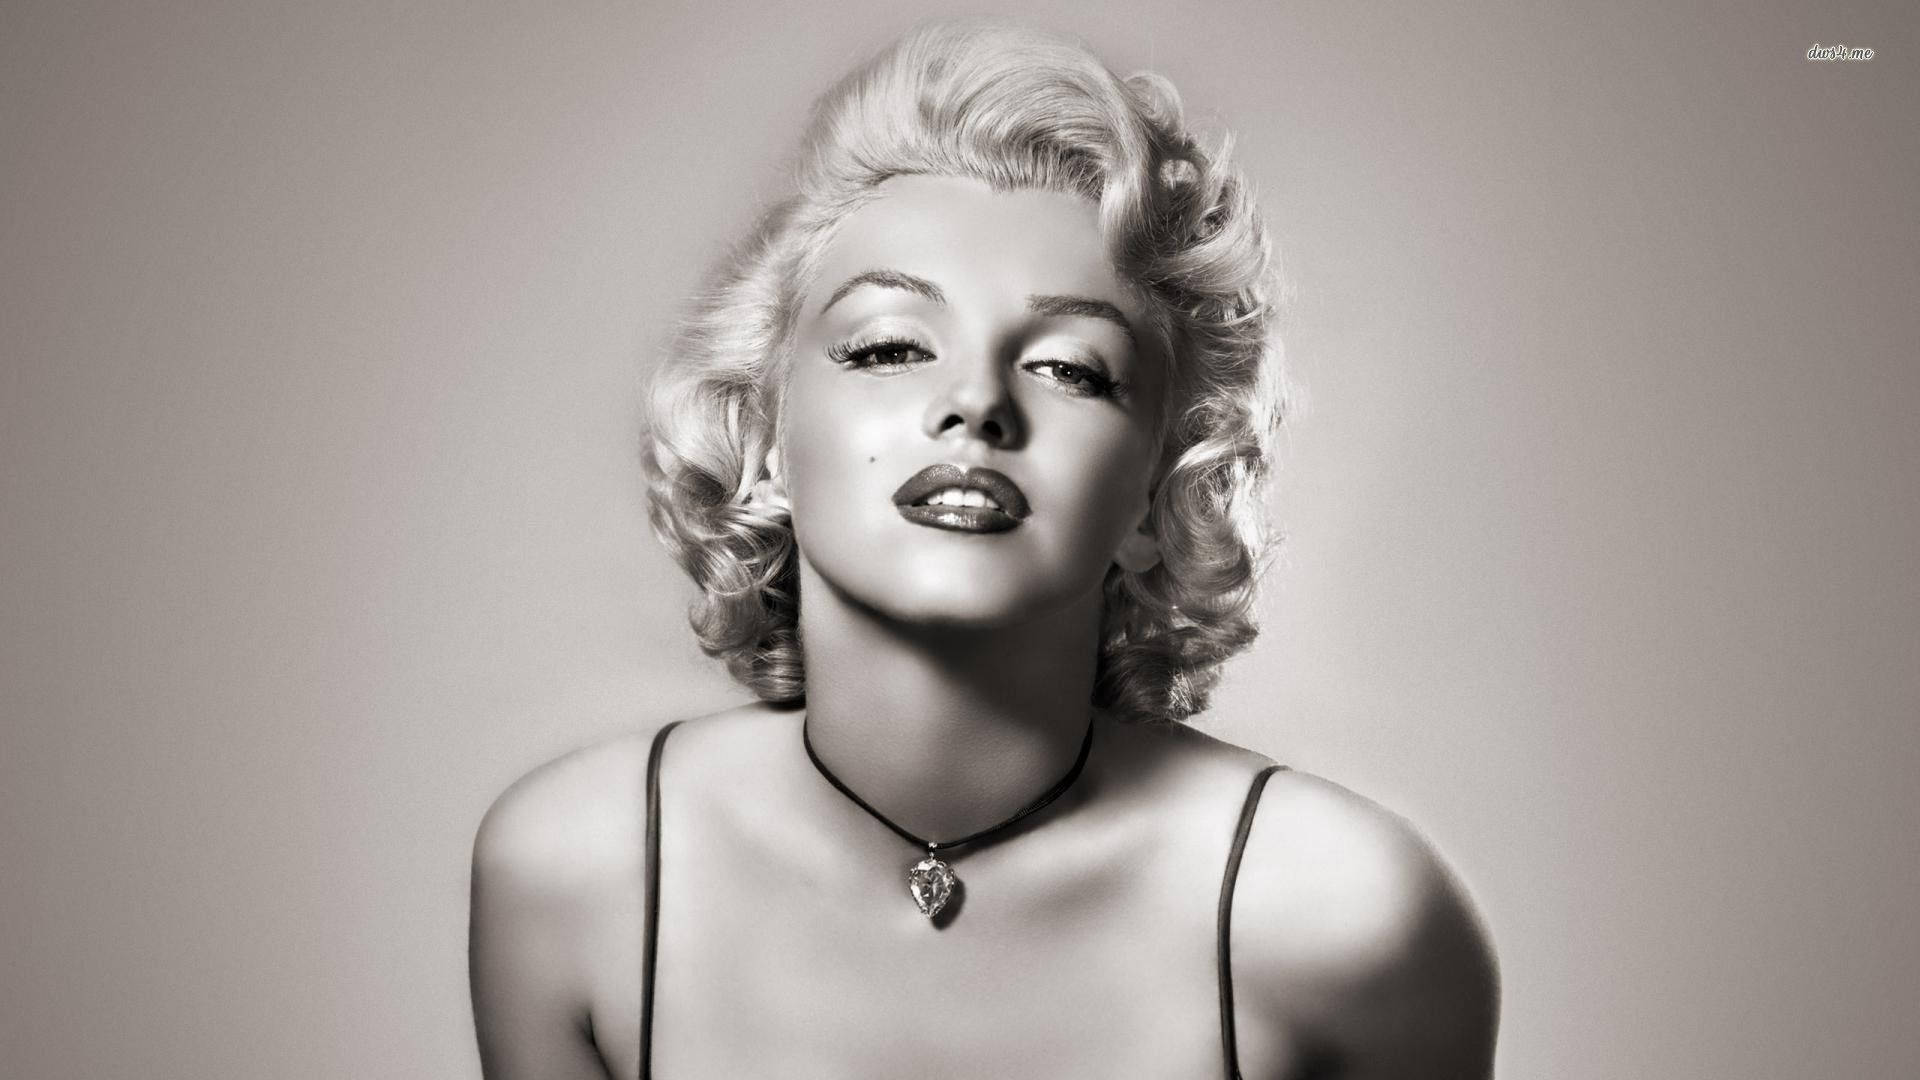 Free Marilyn Monroe Wallpaper Downloads, [100+] Marilyn Monroe Wallpapers  for FREE 